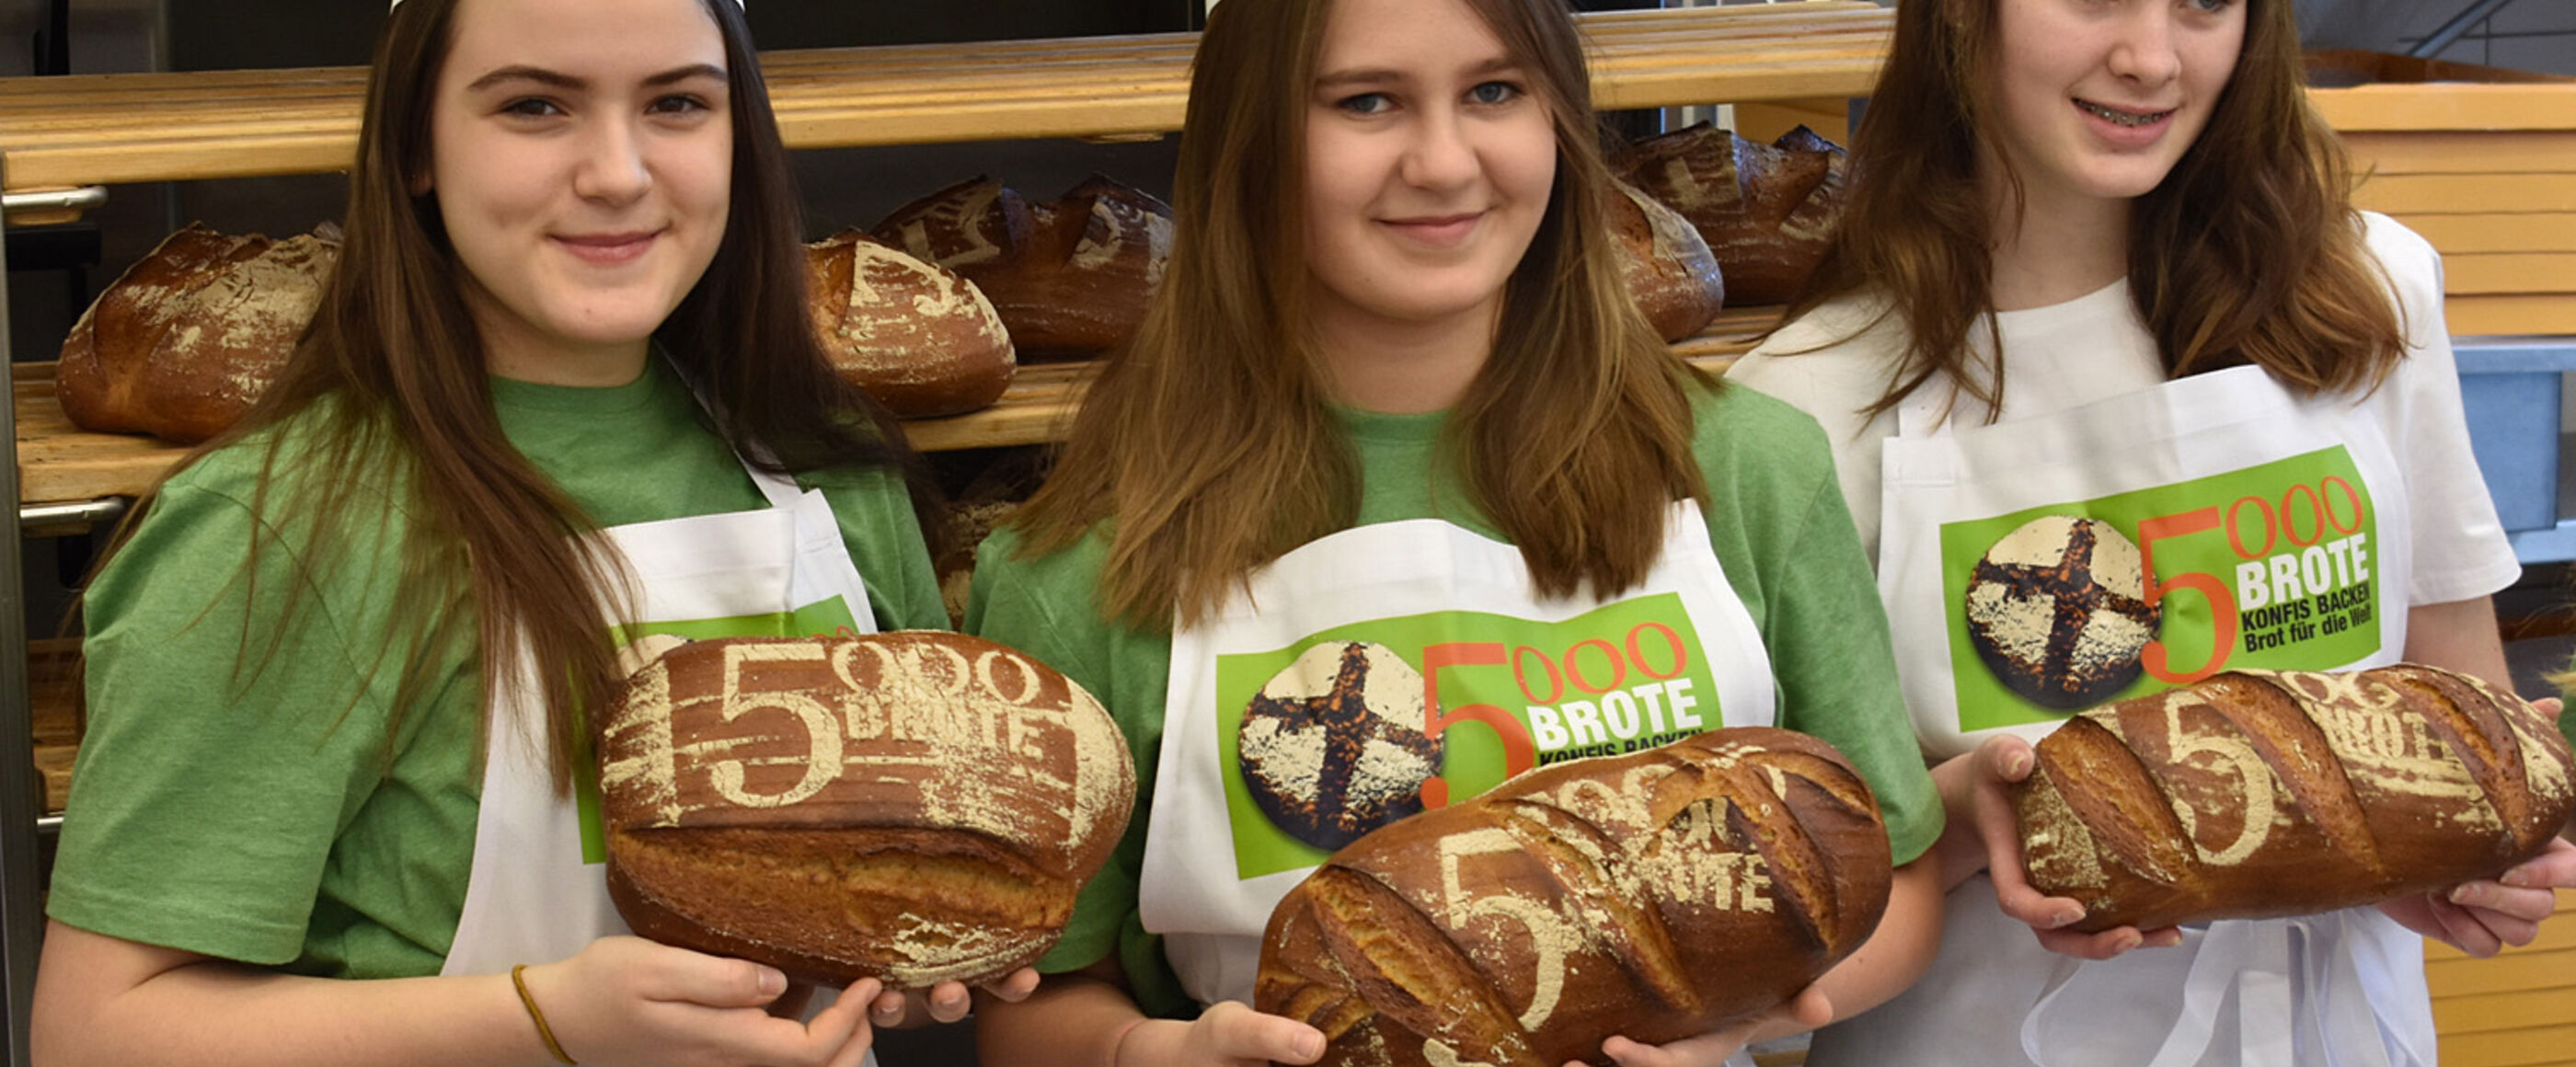 Drei Mädchen stehen in einer Backstube und halten Brot in den Händen